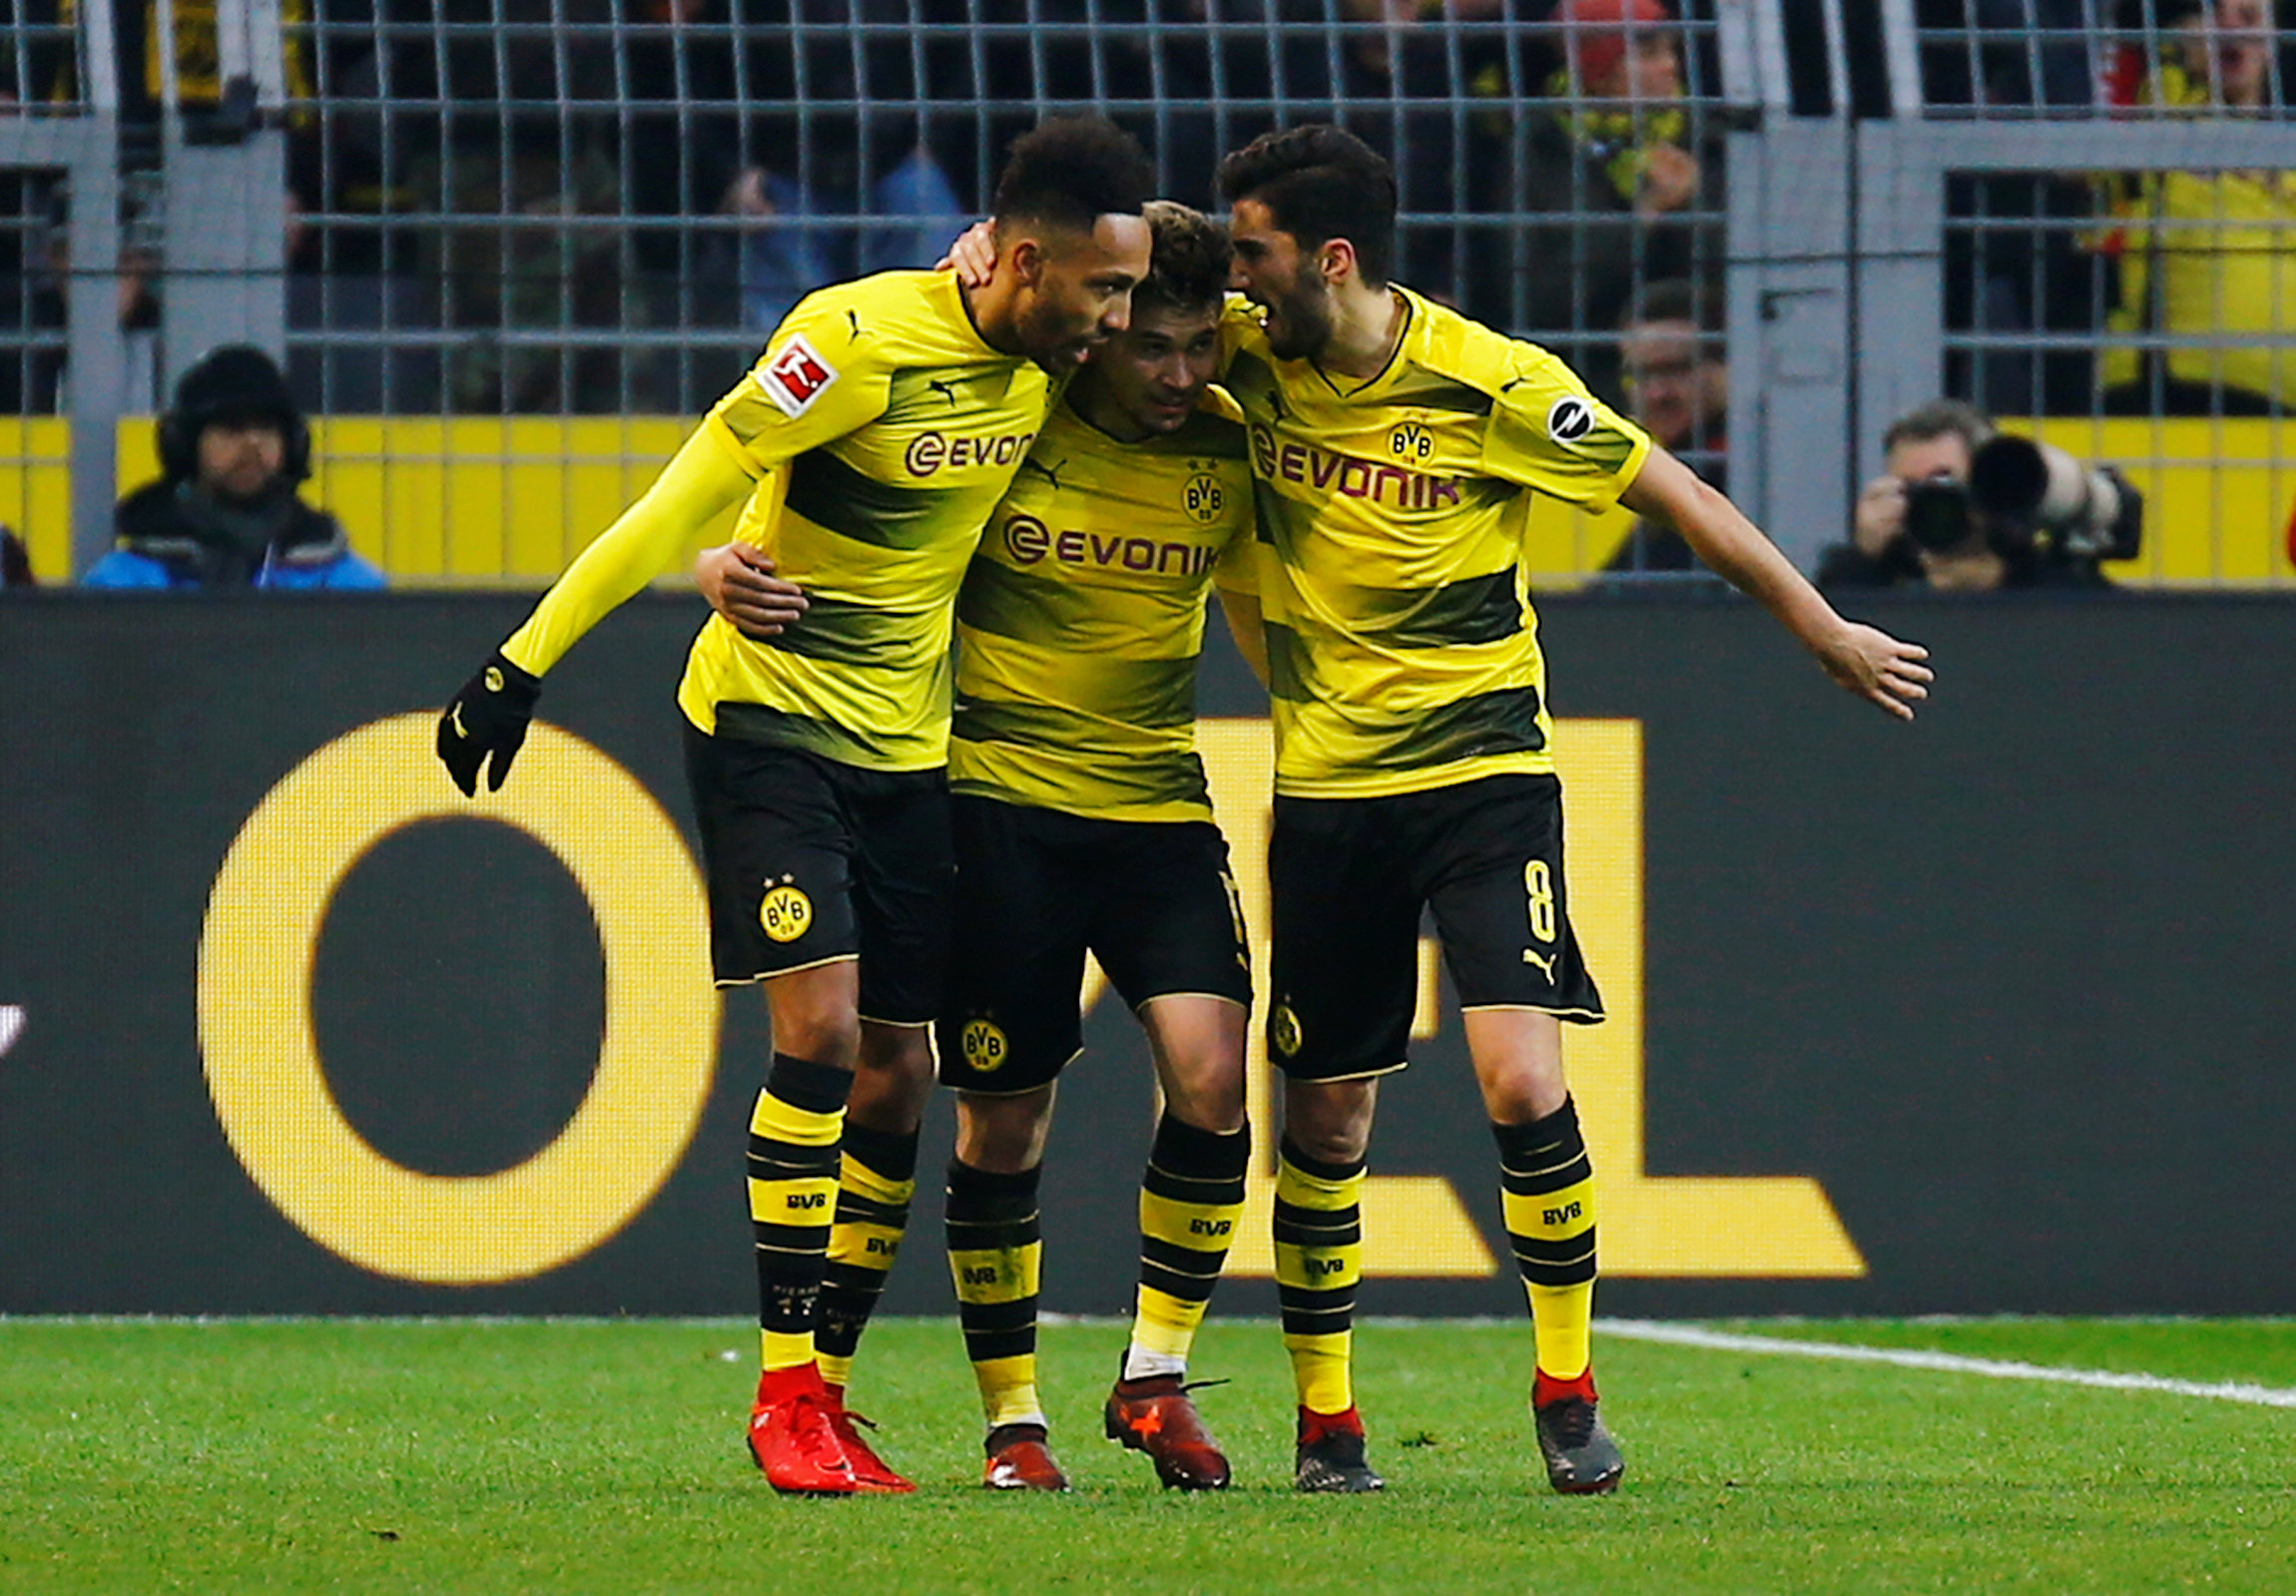 Niềm vui của các cầu thủ Dortmund sau khi ghi bàn vào lưới Schalke. Ảnh: REUTERS